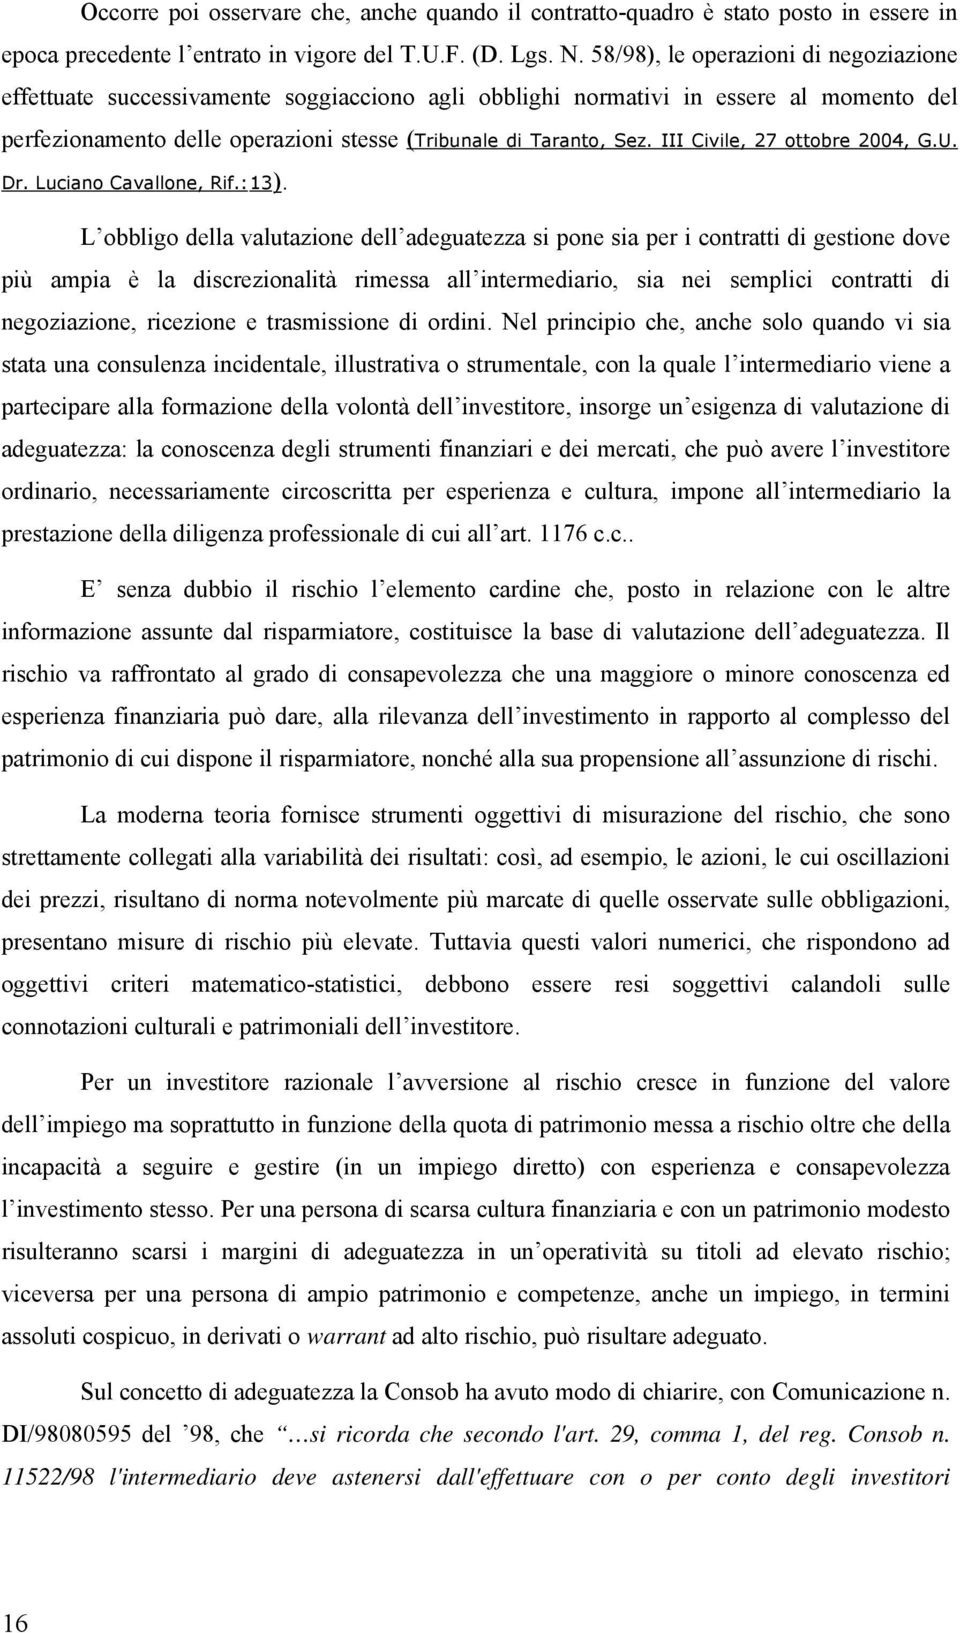 III Civile, 27 ottobre 2004, G.U. Dr. Luciano Cavallone, Rif.:13).